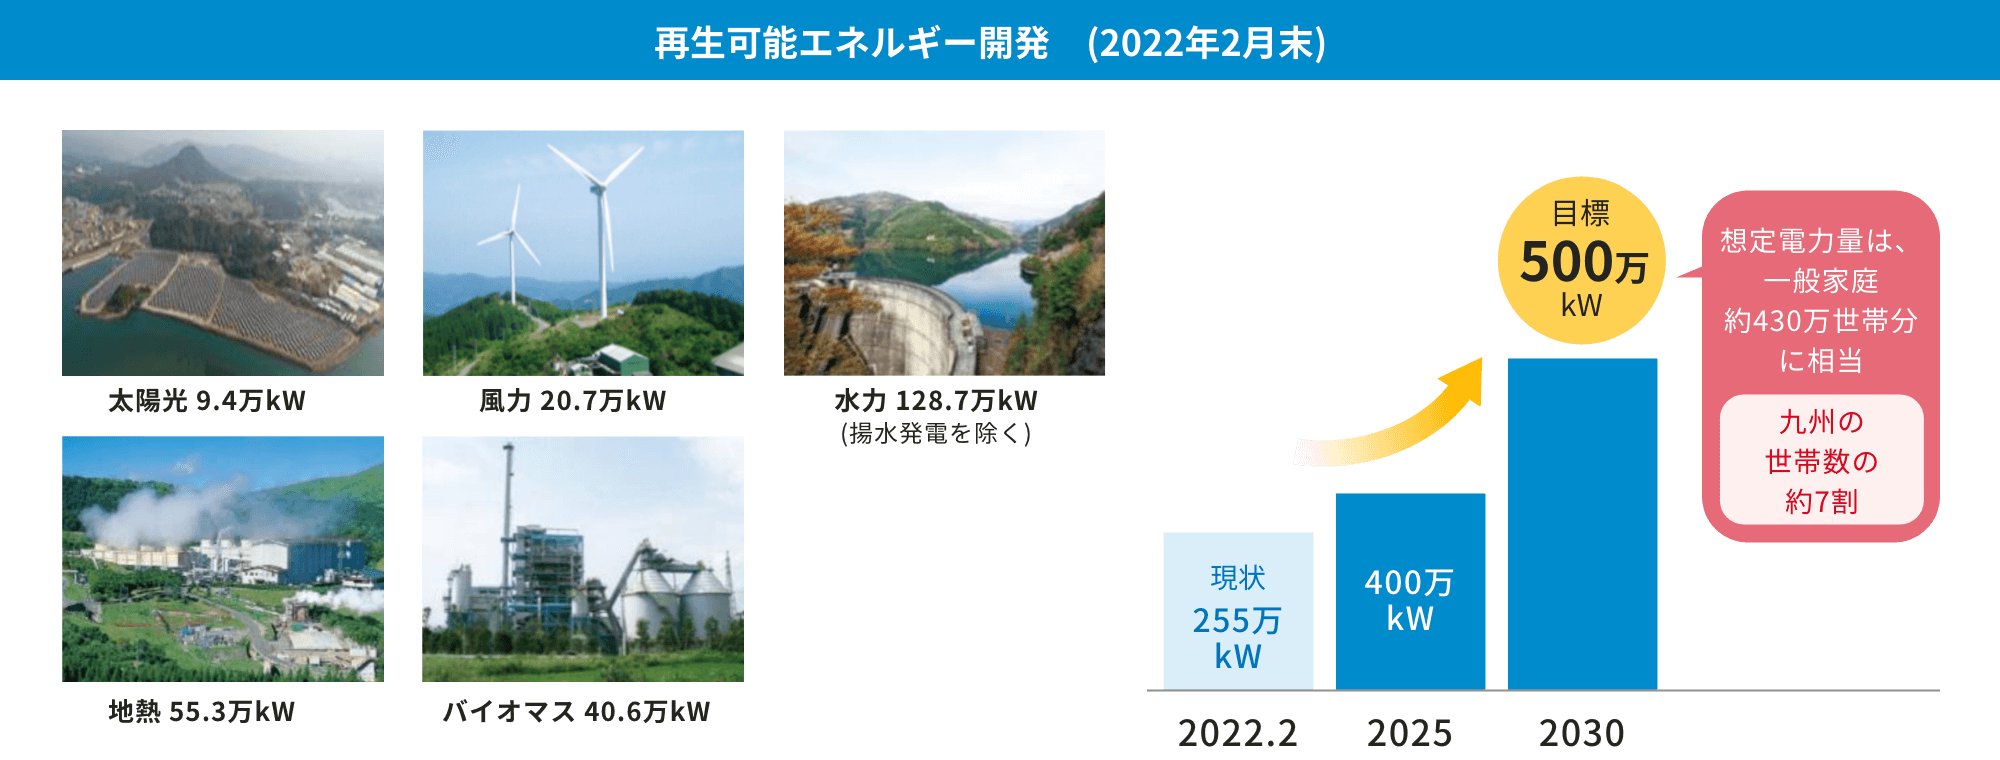 再生可能エネルギー開発（2021年11月末）